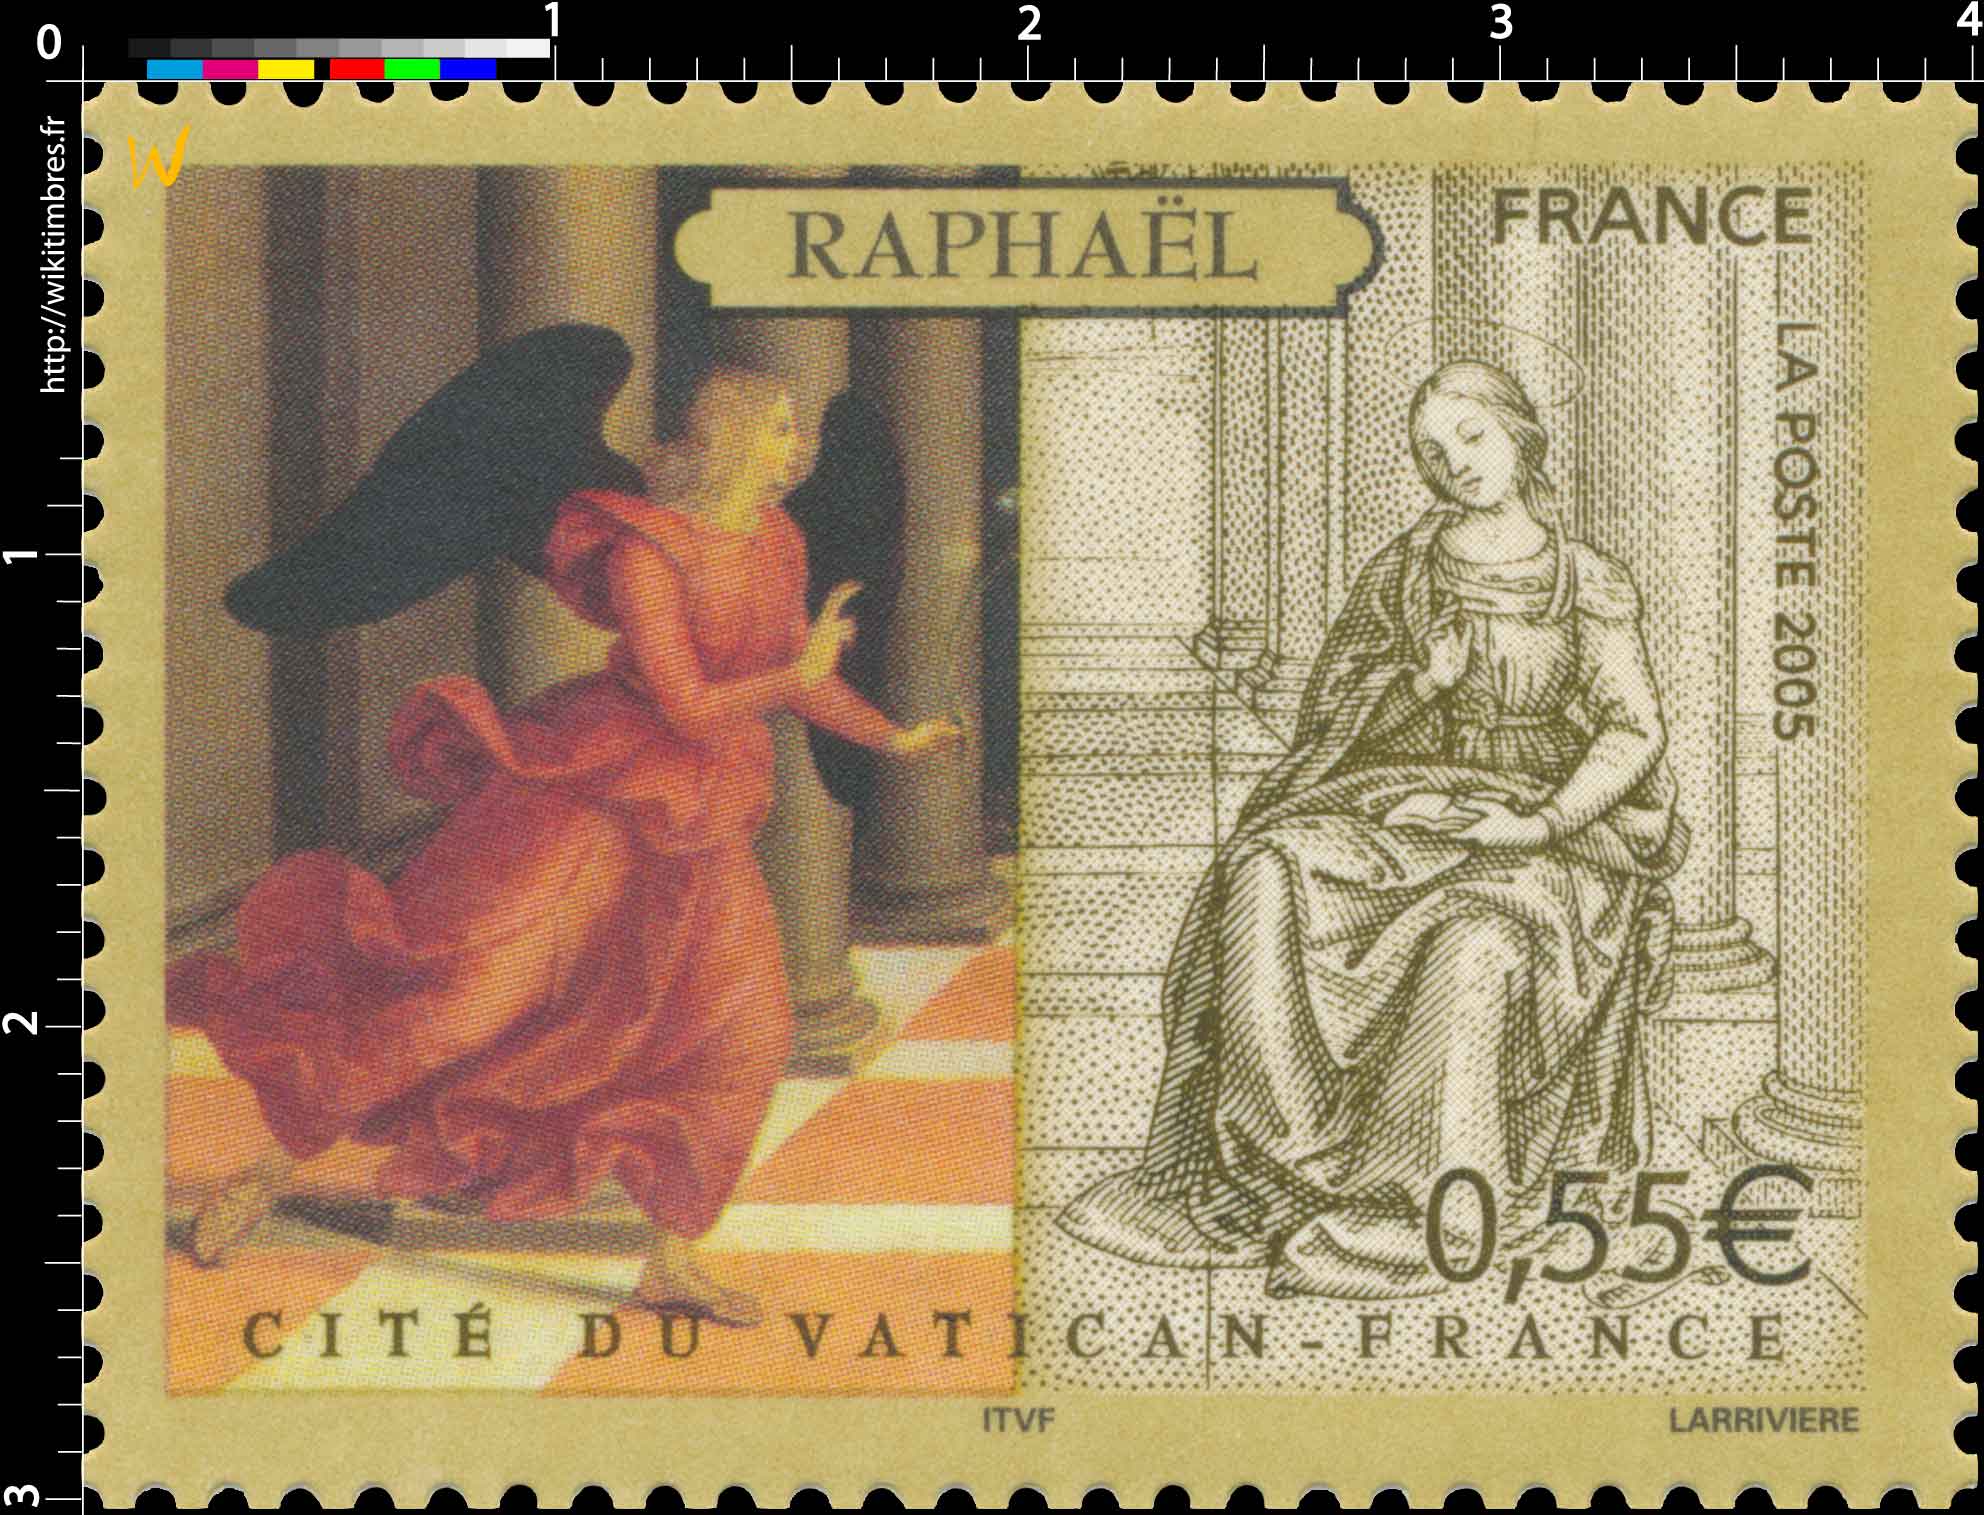 2005 RAPHAEL CITE DU VATICAN-FRANCE